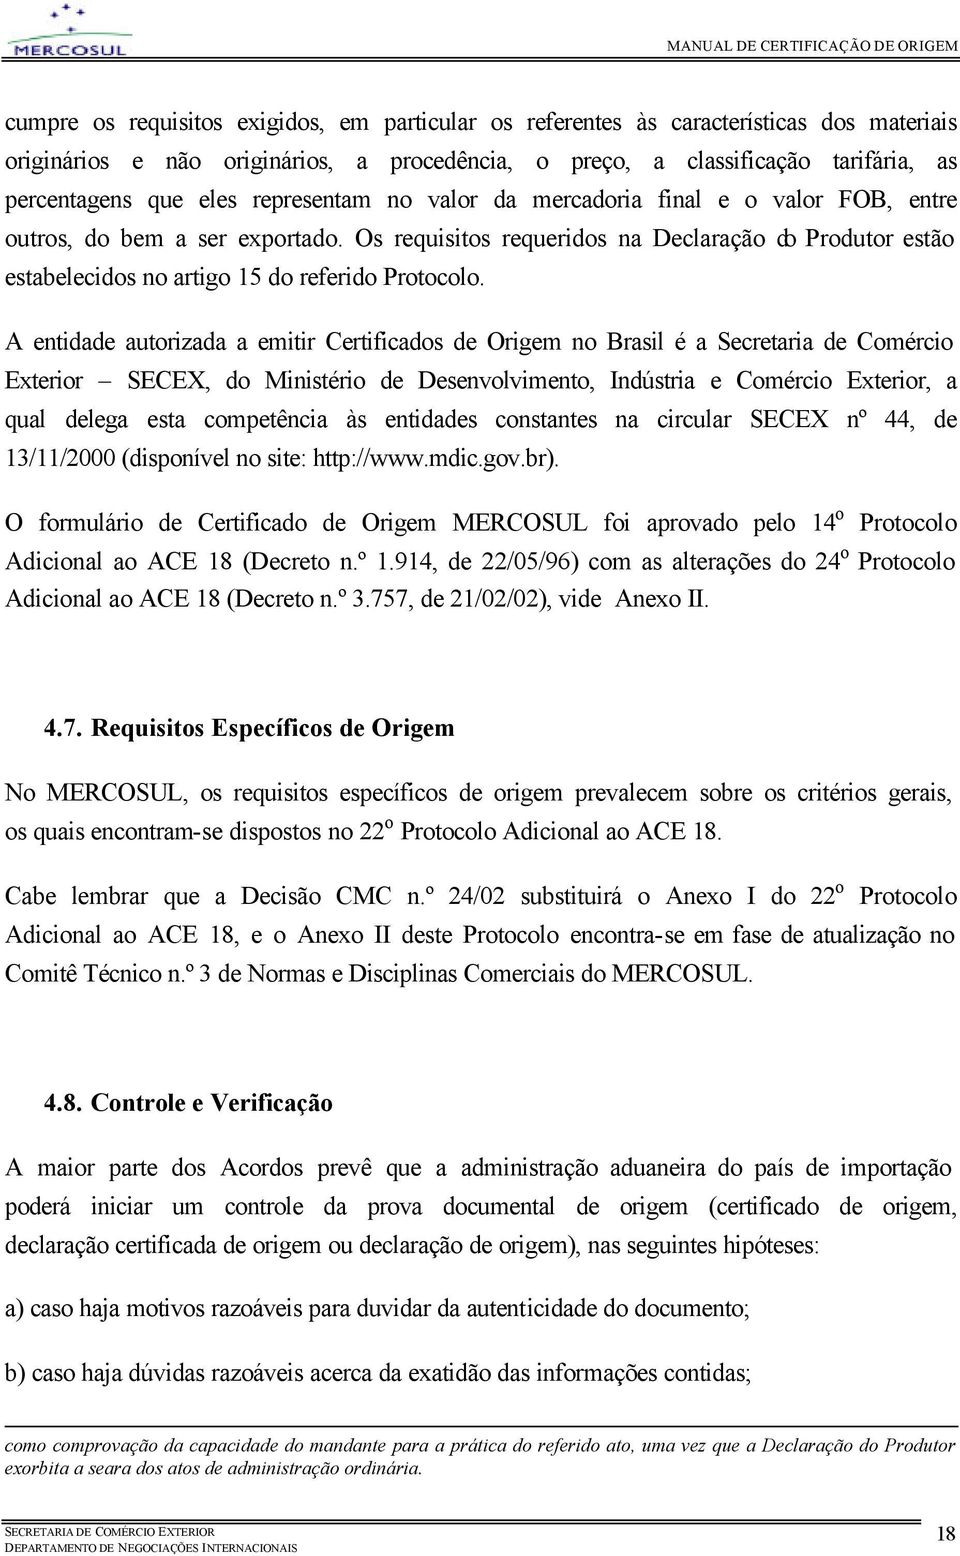 A entidade autorizada a emitir Certificados de Origem no Brasil é a Secretaria de Comércio Exterior SECEX, do Ministério de Desenvolvimento, Indústria e Comércio Exterior, a qual delega esta